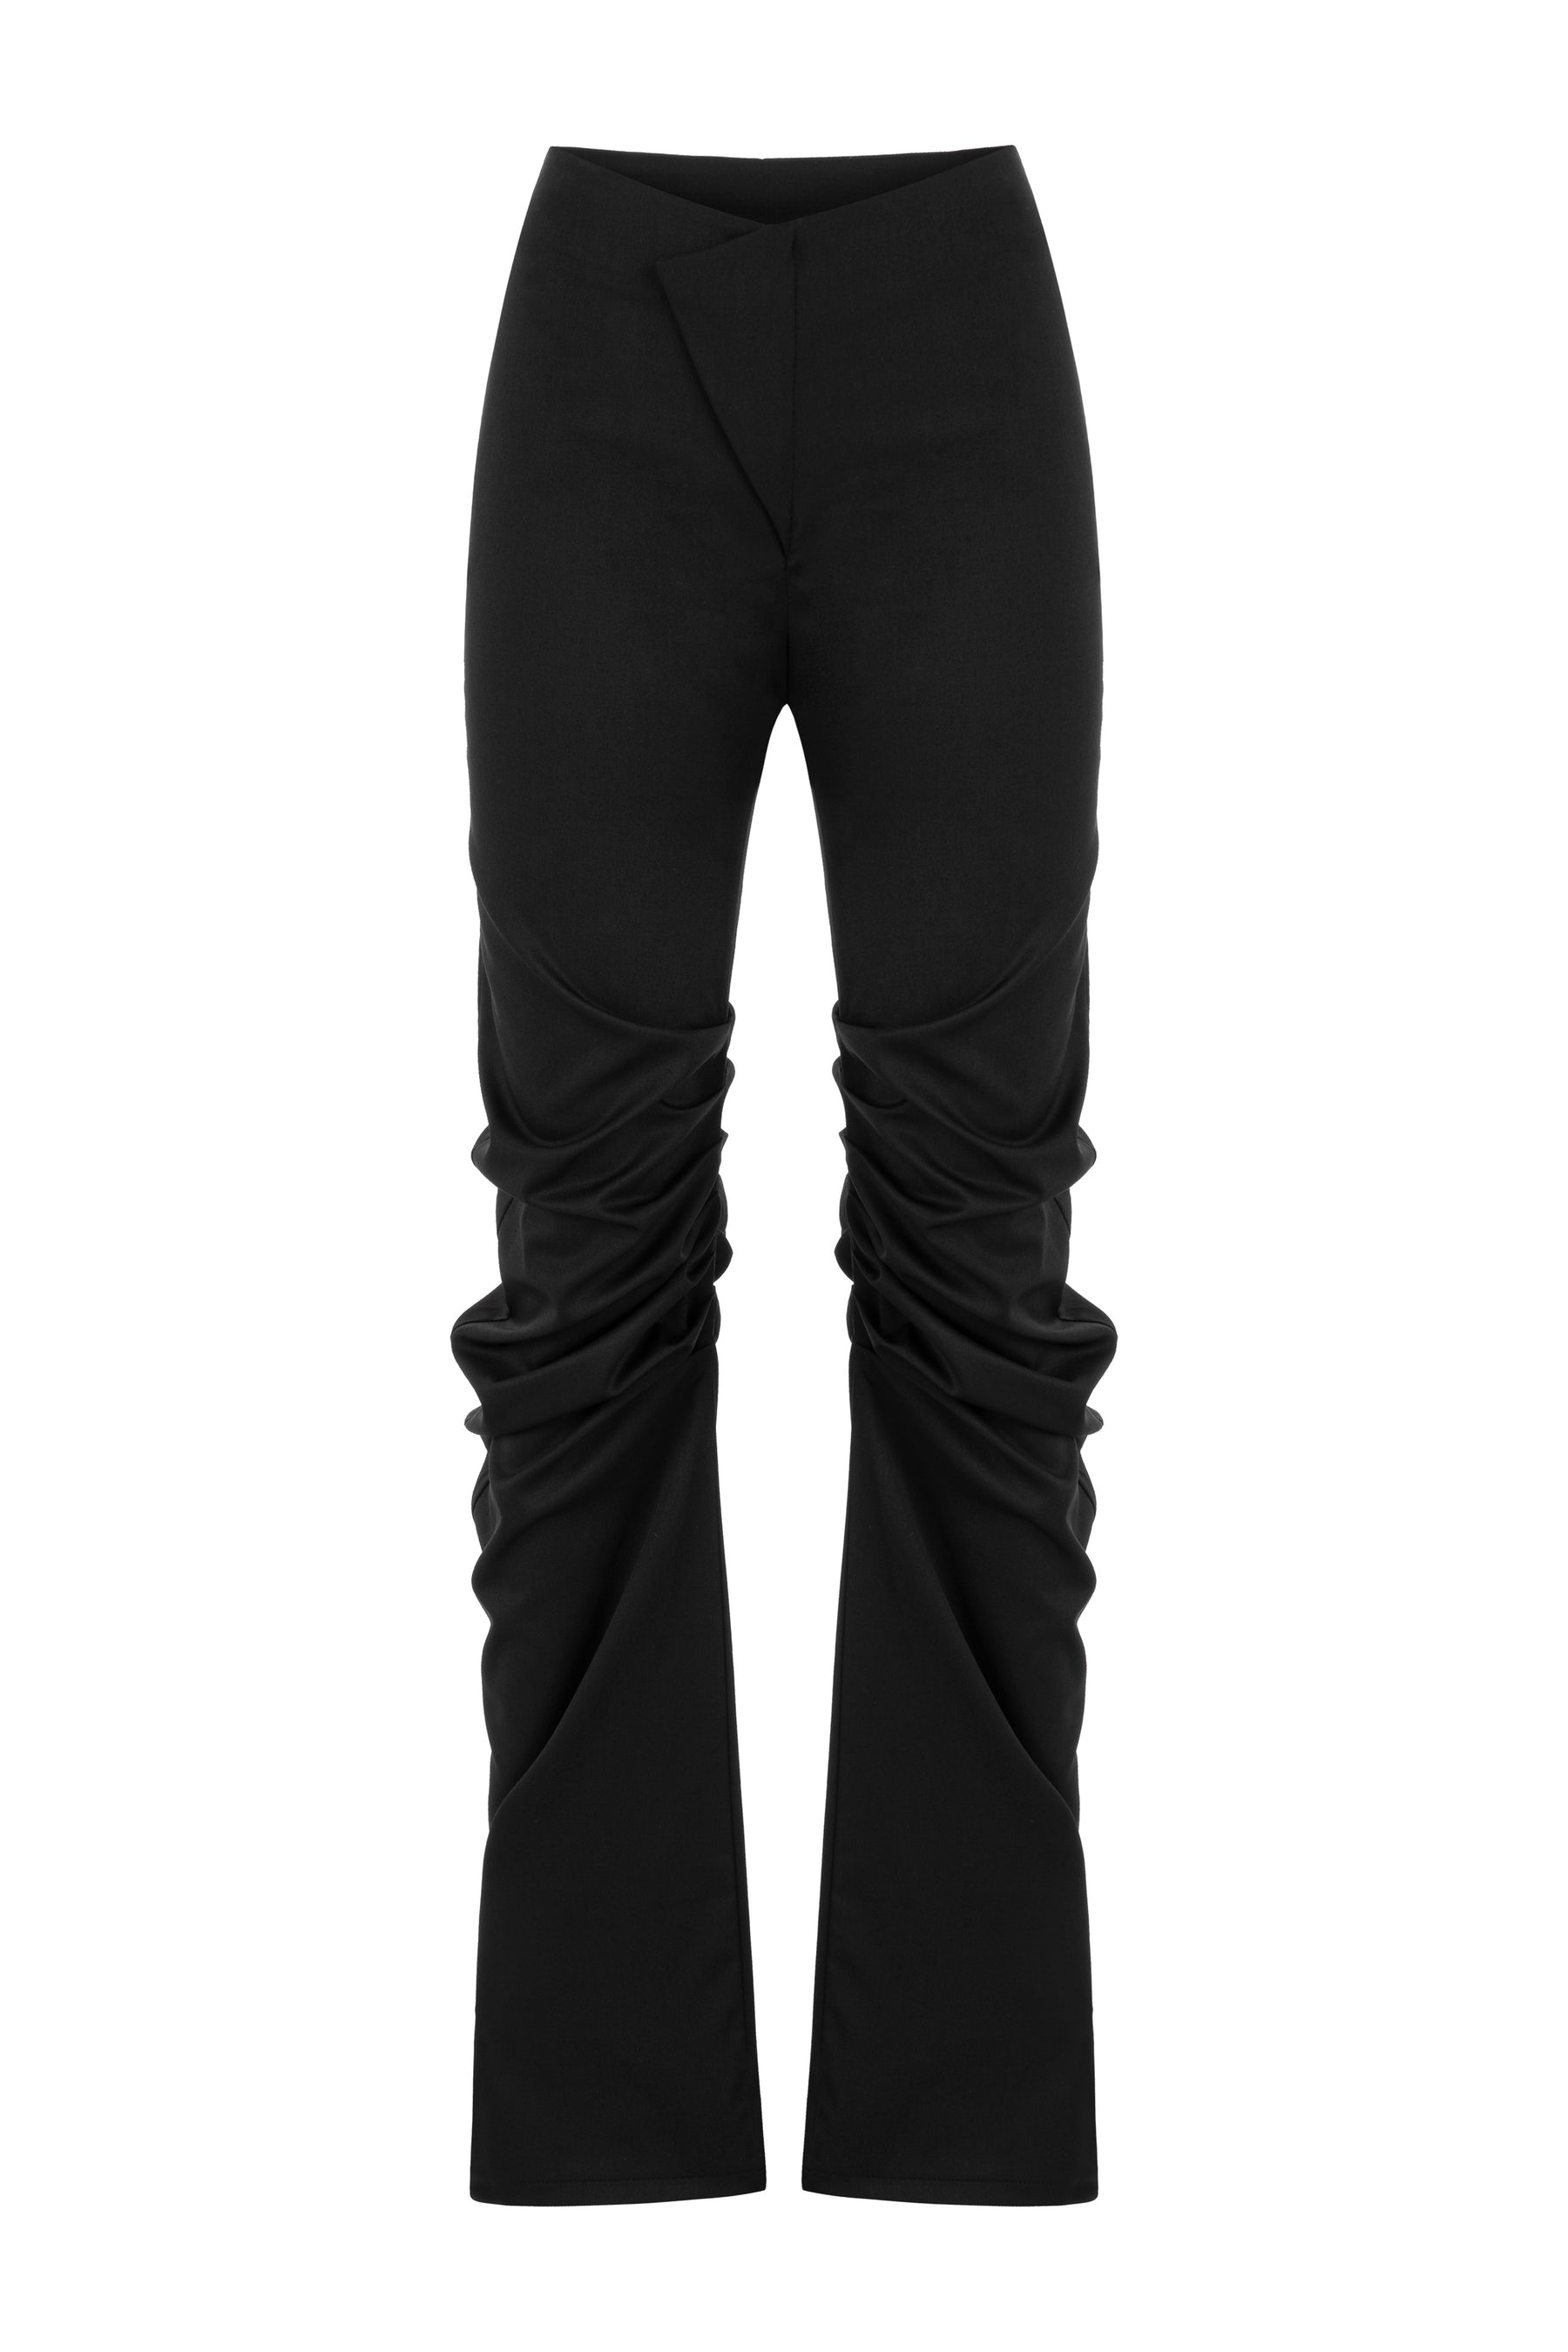 Anti-Gravity Pants in Black